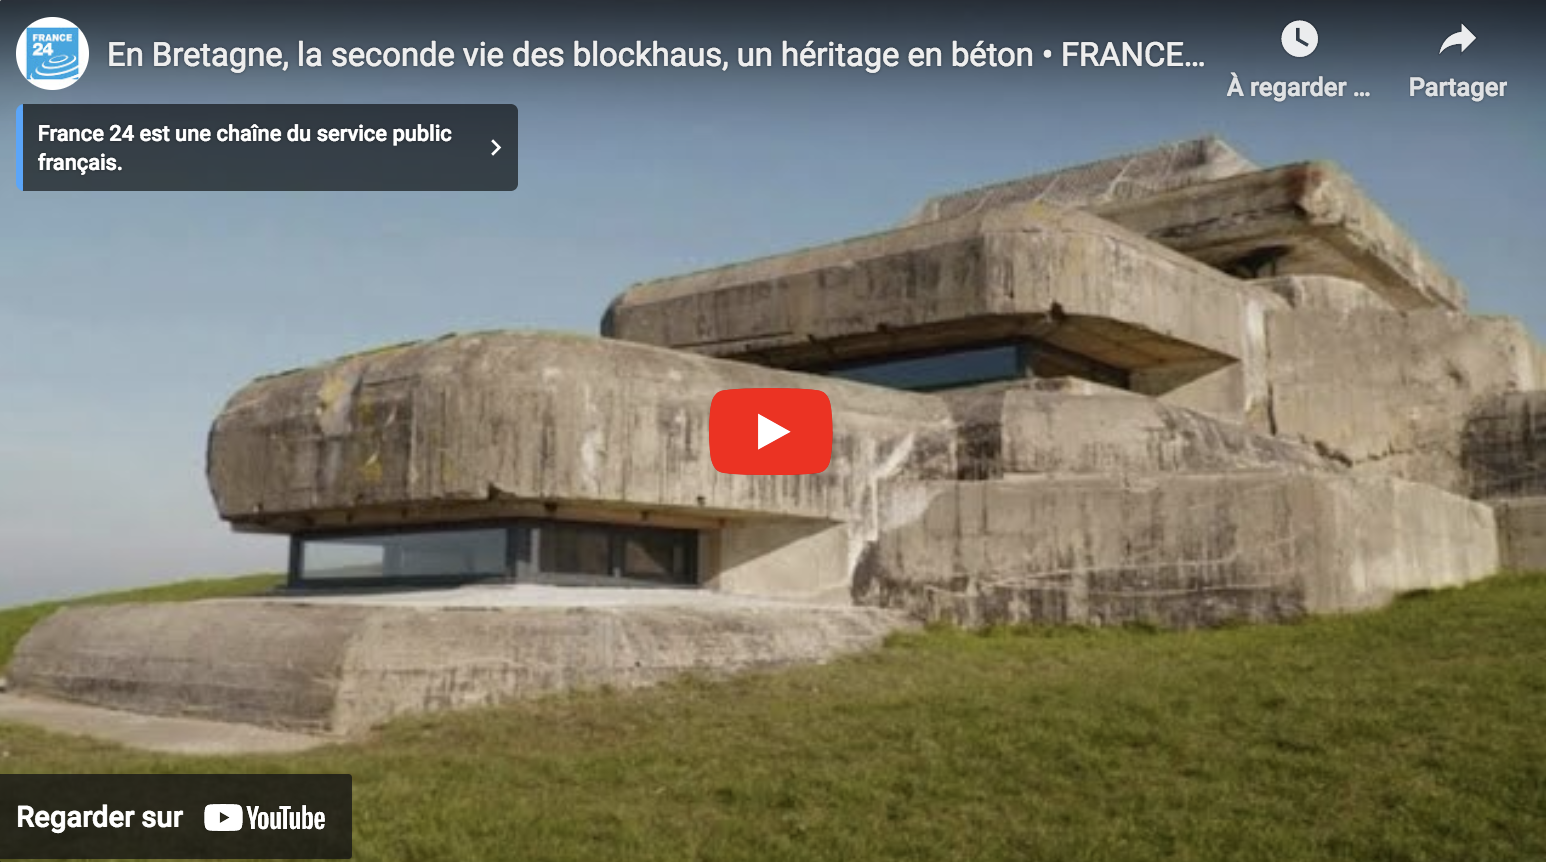 En Bretagne, la seconde vie des blockhaus, un héritage en béton (VIDÉO)